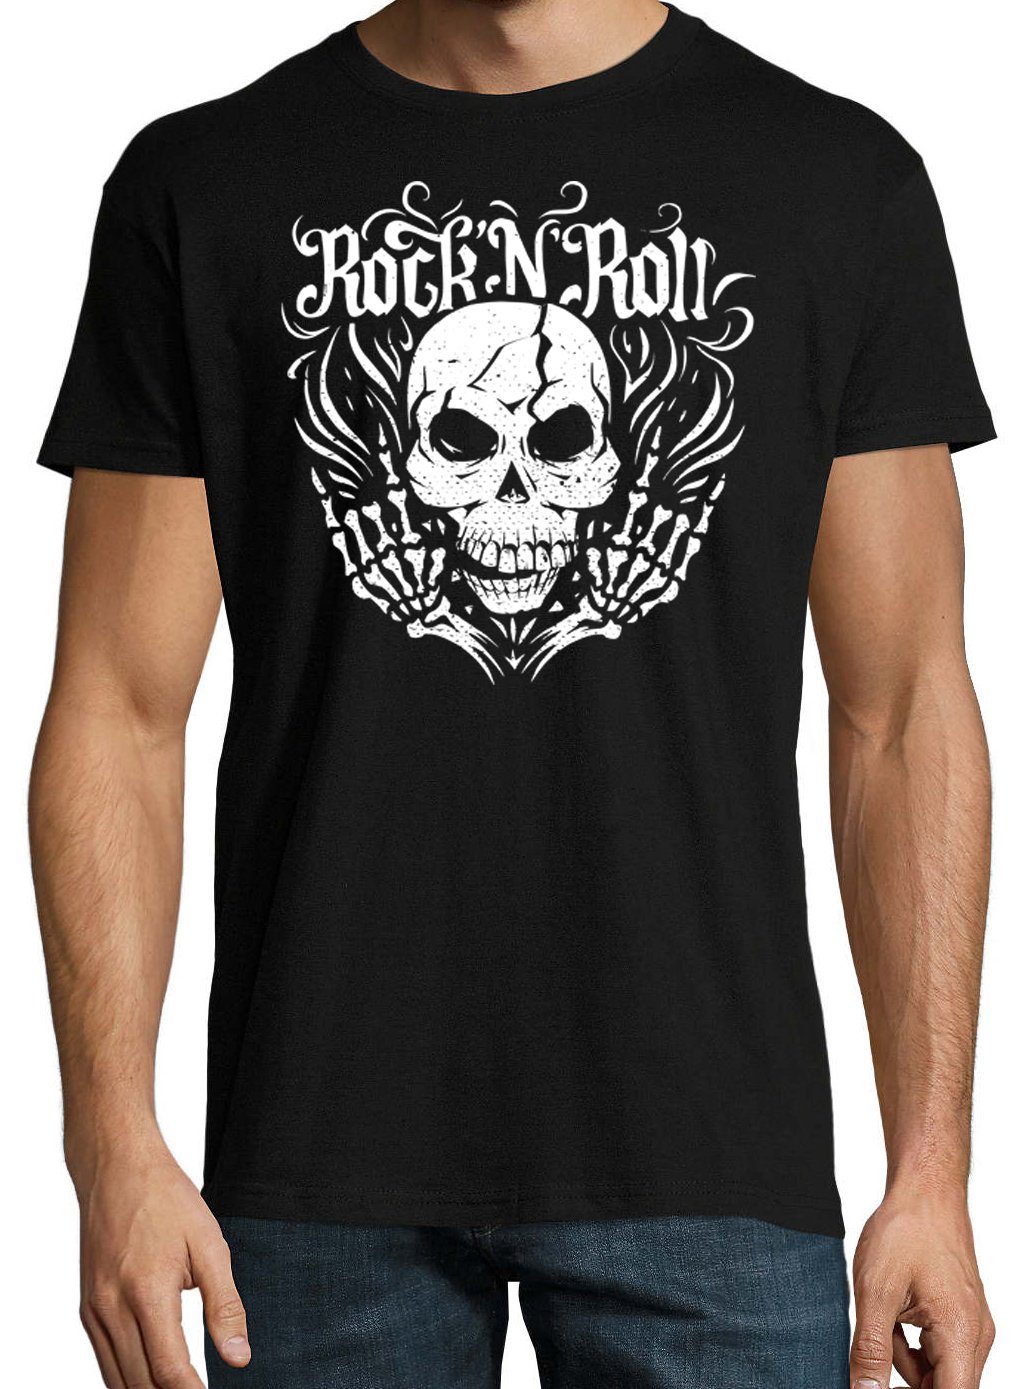 Rock T-Shirt and Youth Roll Skull Herren Frontdruck im Trendigem Schwarz Fun-Look mit T-Shirt Designz